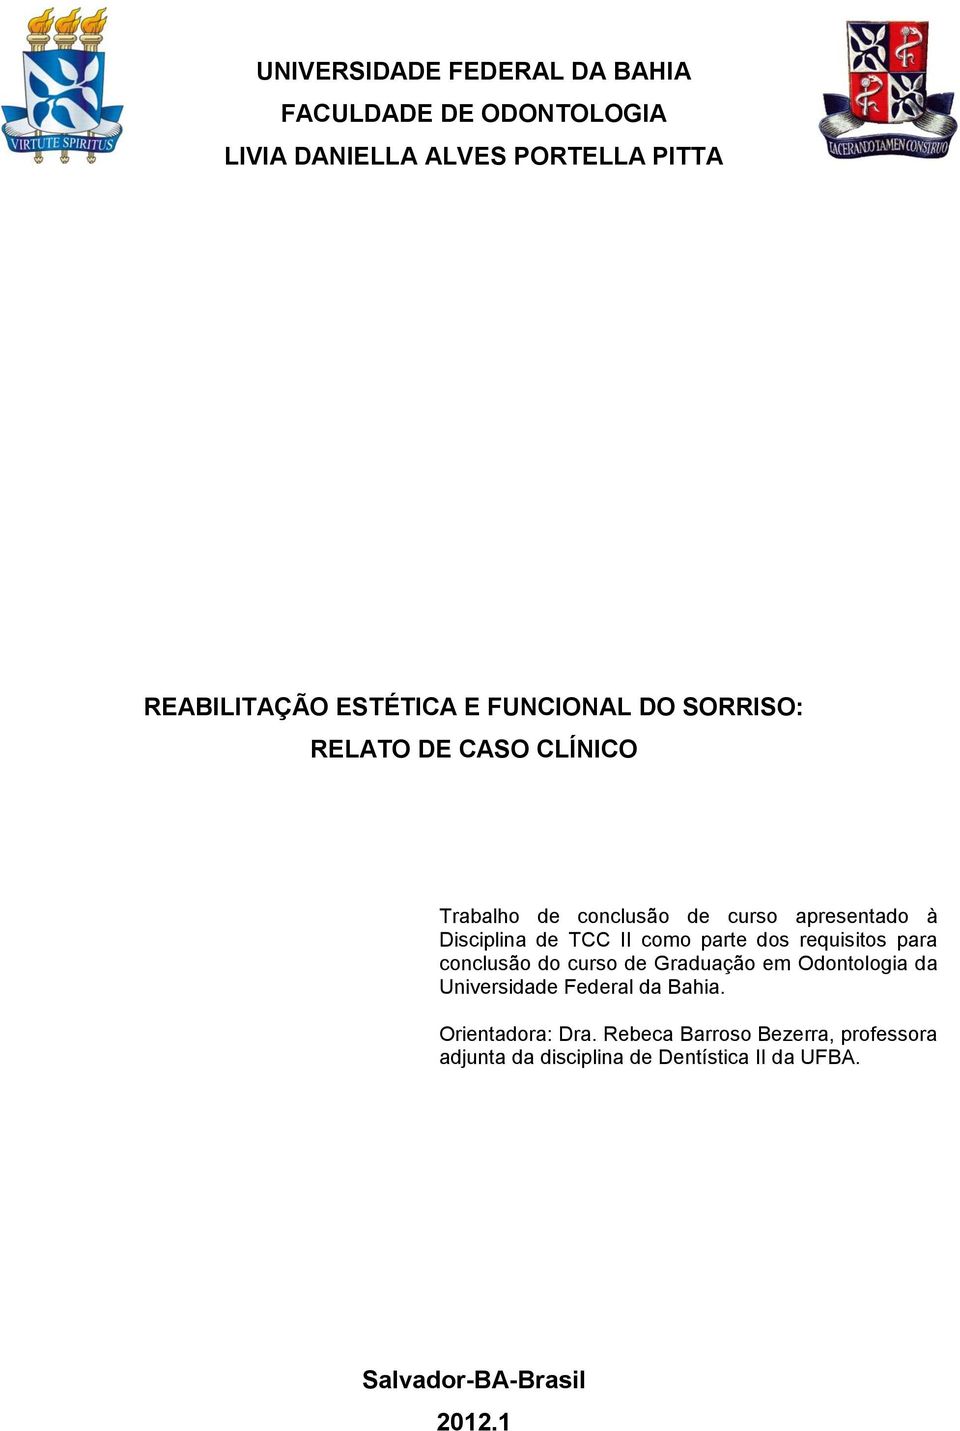 parte dos requisitos para conclusão do curso de Graduação em Odontologia da Universidade Federal da Bahia.